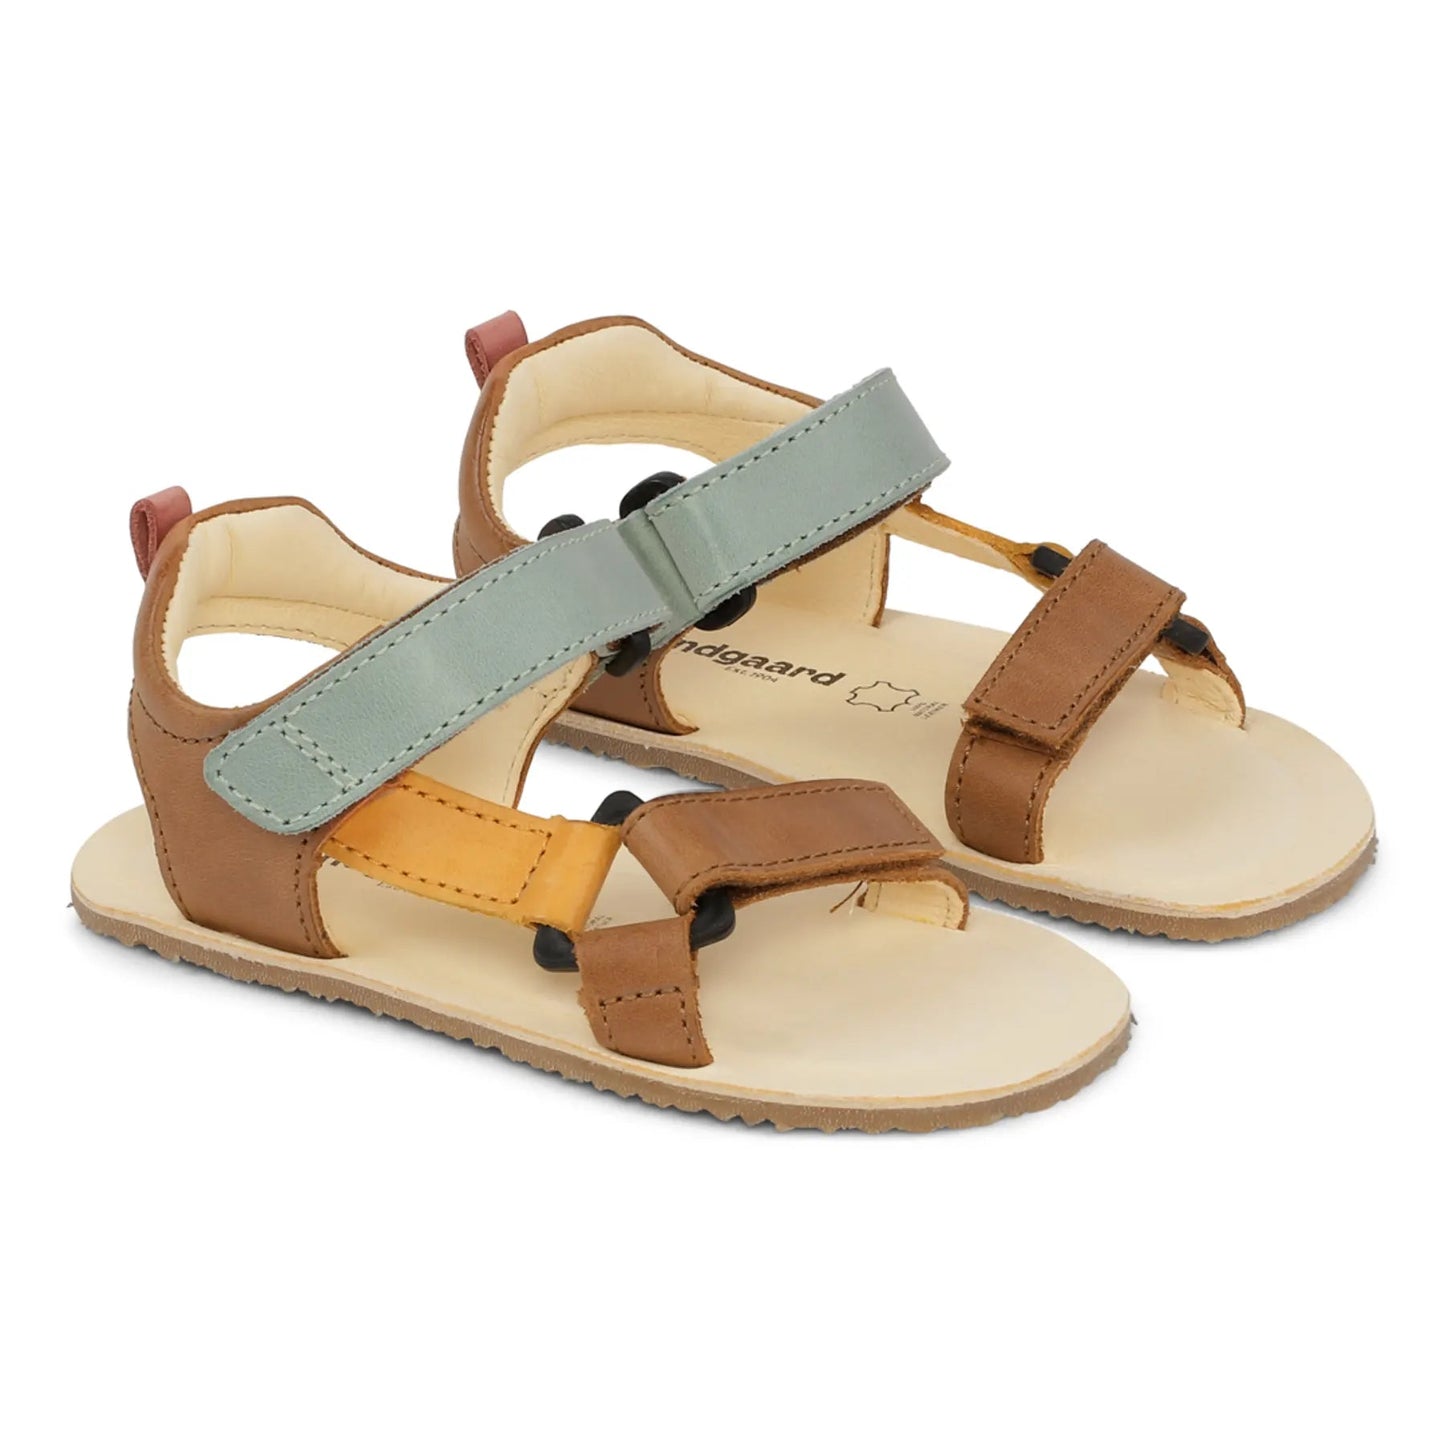 Bundgaard Skye barfods sandaler til børn i farven tan, par